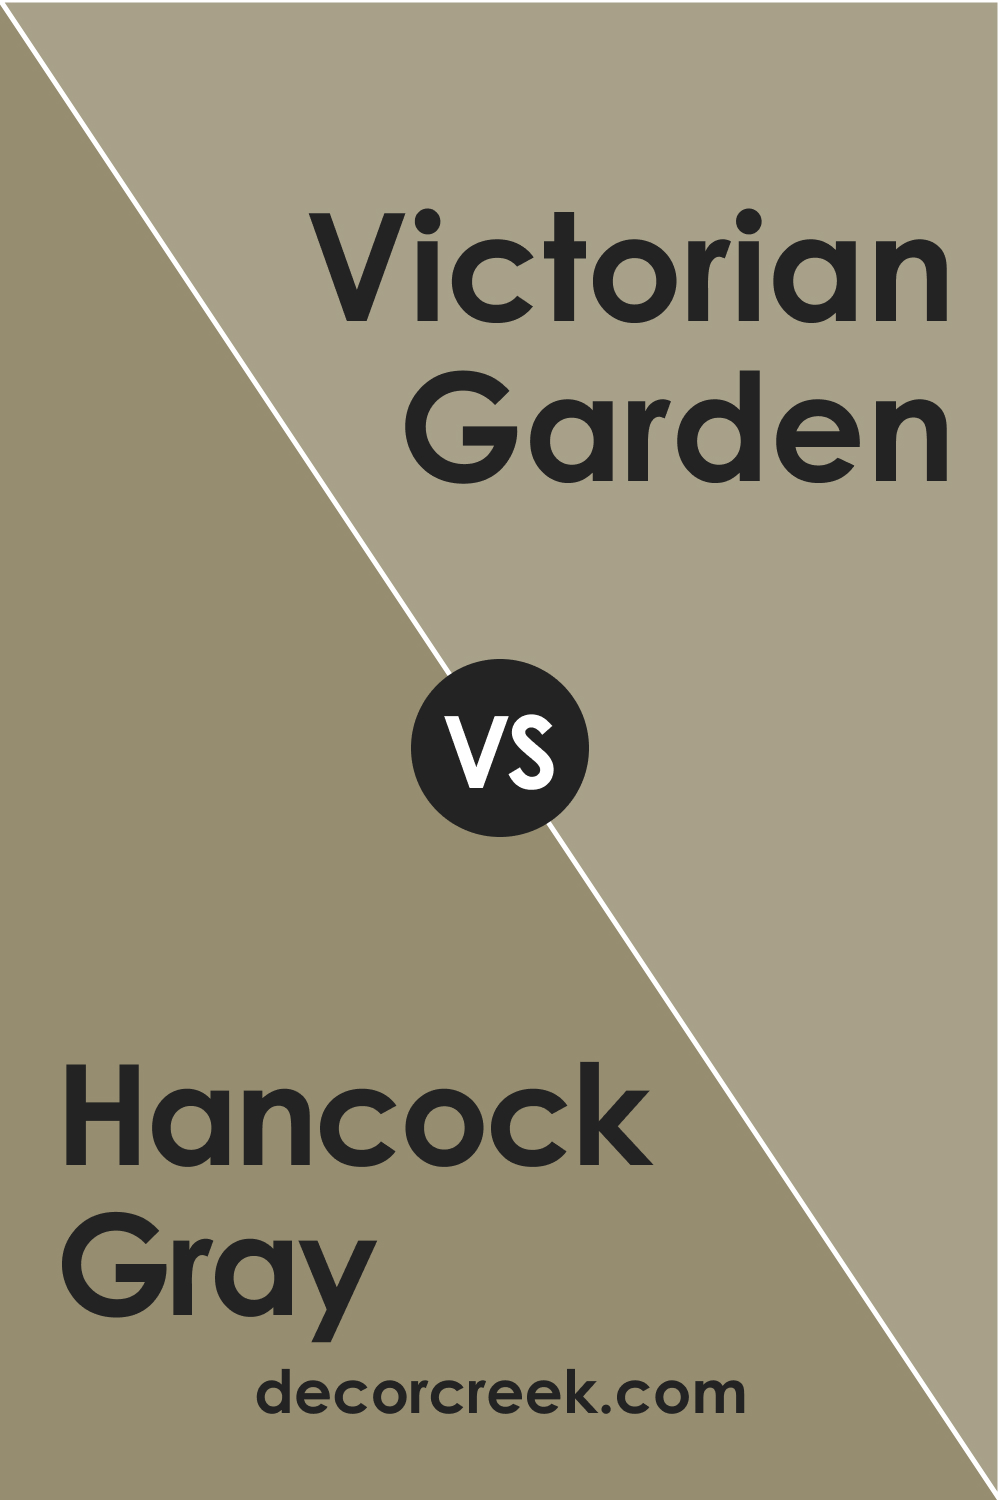 Hancock Gray HC-97 vs. BM 1531 Victorian Garden